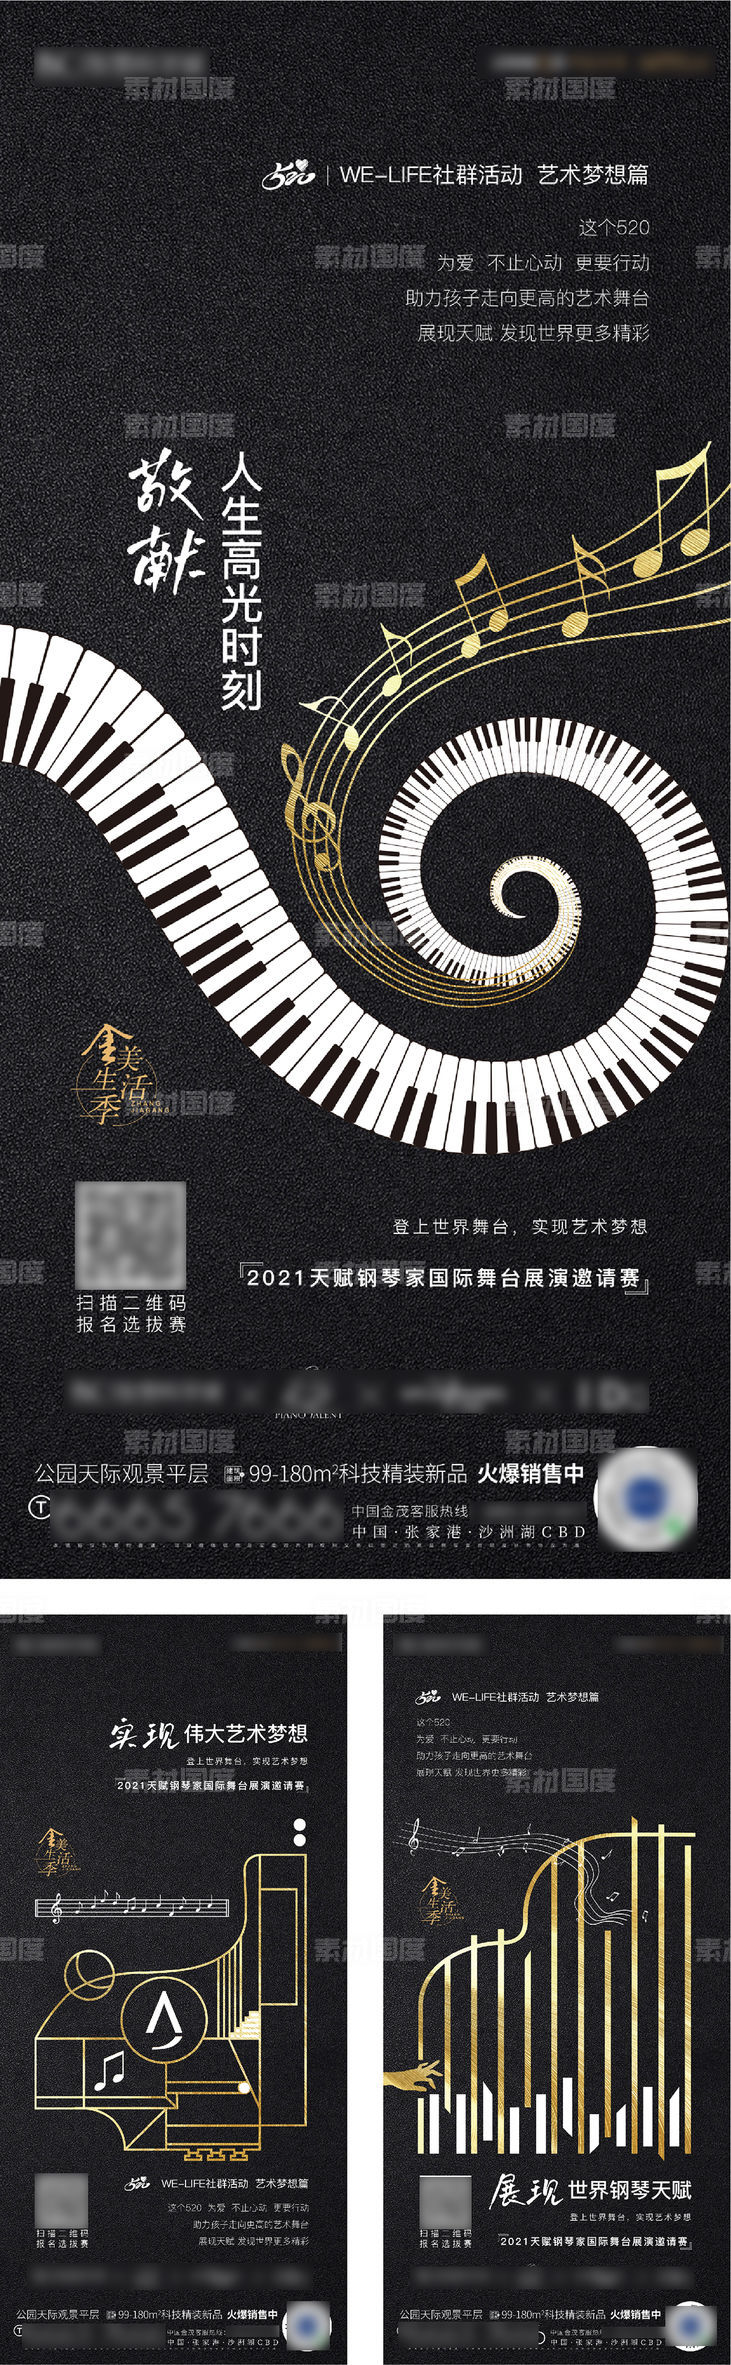 钢琴表演活动海报